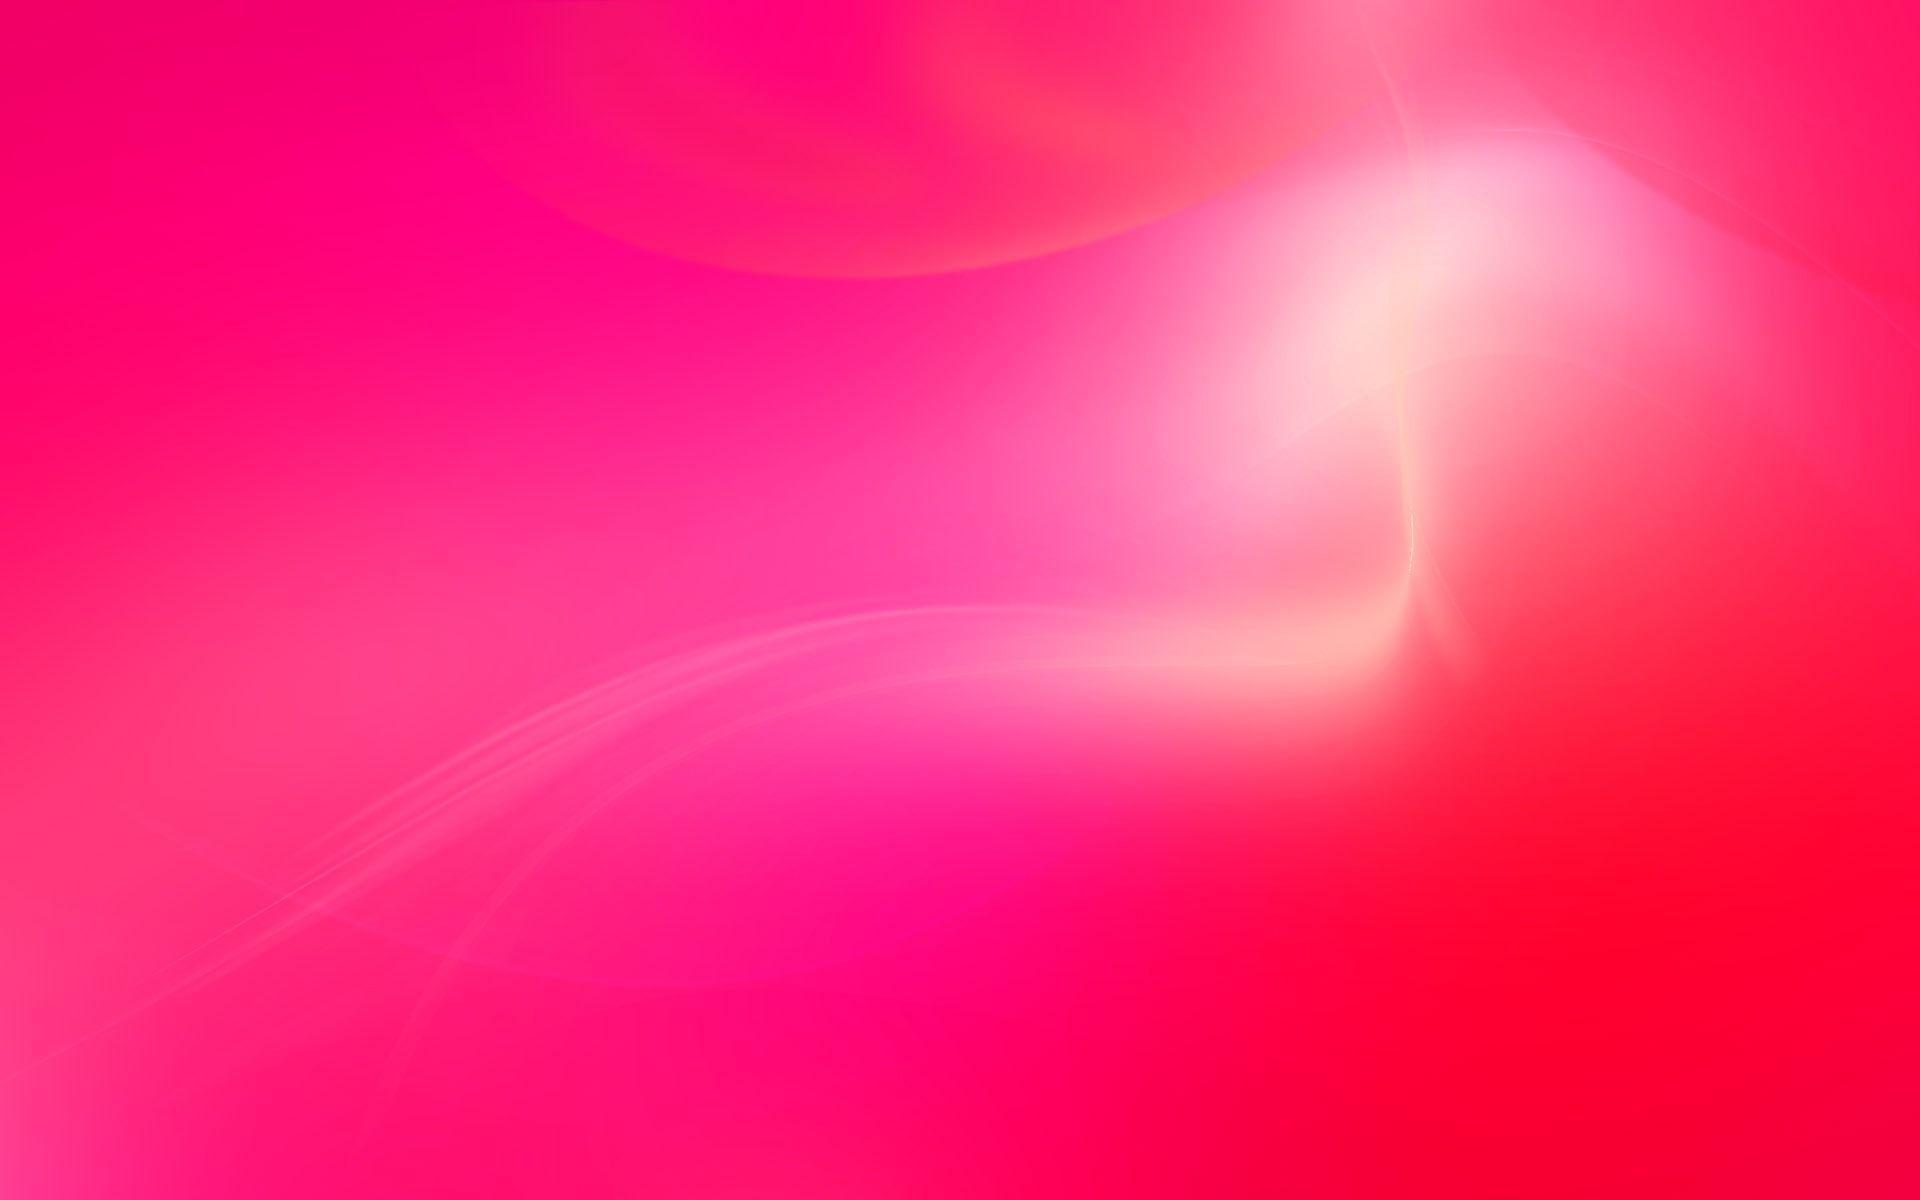 Hình nền màu hồng sáng tạo sẽ mang đến cho bạn một không gian tươi trẻ và rực rỡ. Với màu hồng nhẹ nhàng kết hợp với các chi tiết sáng tạo, thiết kế này sẽ đem lại cho bạn sự mới mẻ và thích thú khi sử dụng.